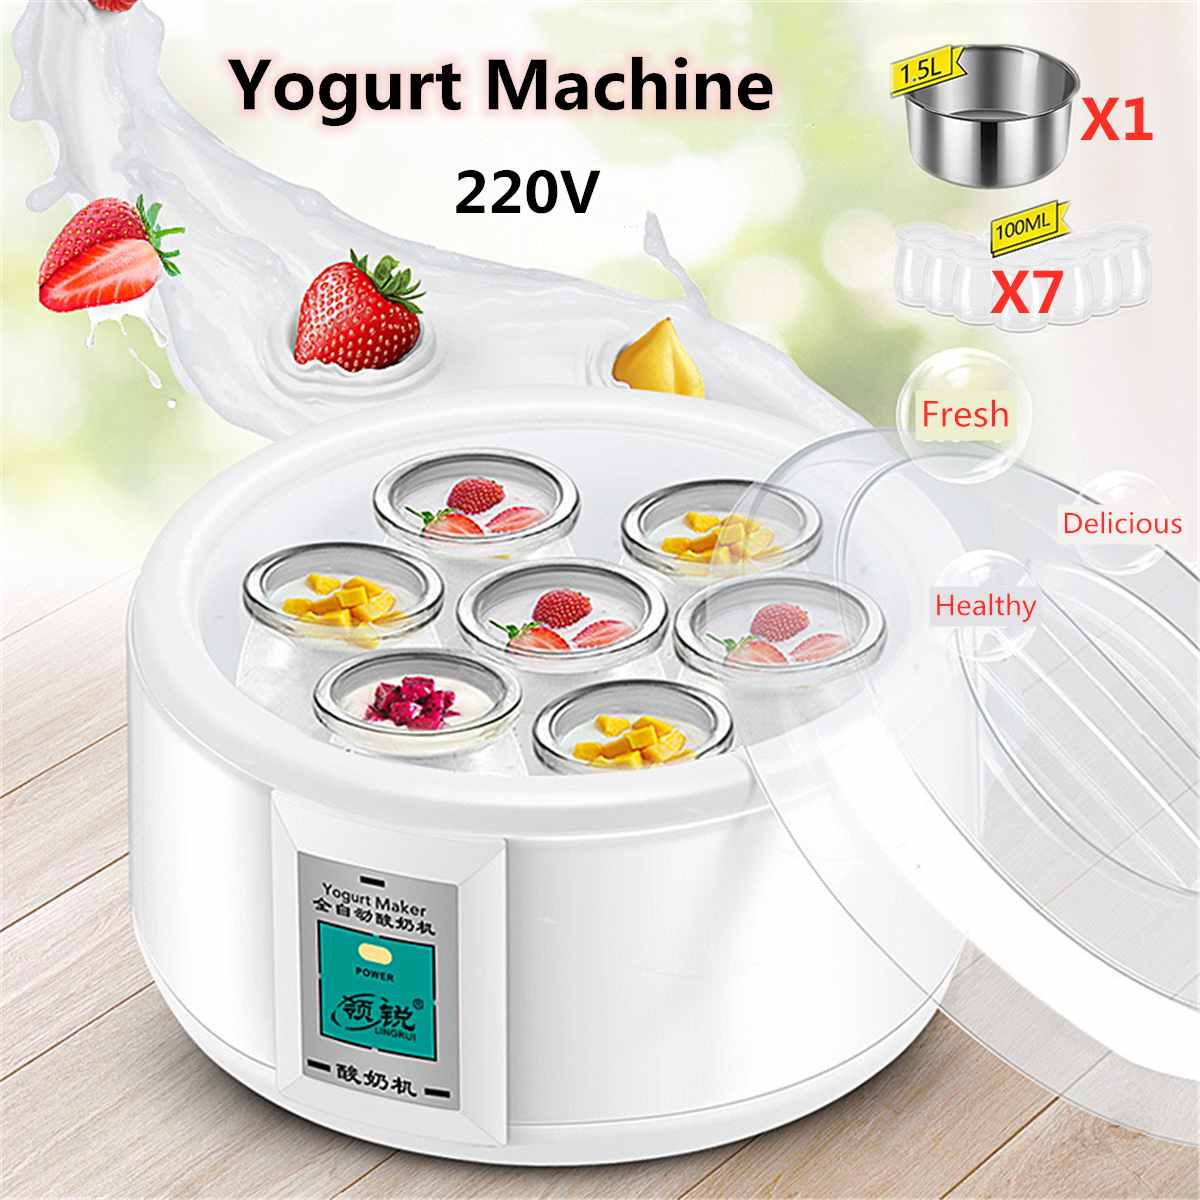 1.5L Automatische Yoghurt Maker Met 7 Potten Diy Tool Elektrische Yoghurt Maker Yoghurt 15W Keukenapparatuur Liner Roestvrij Staal